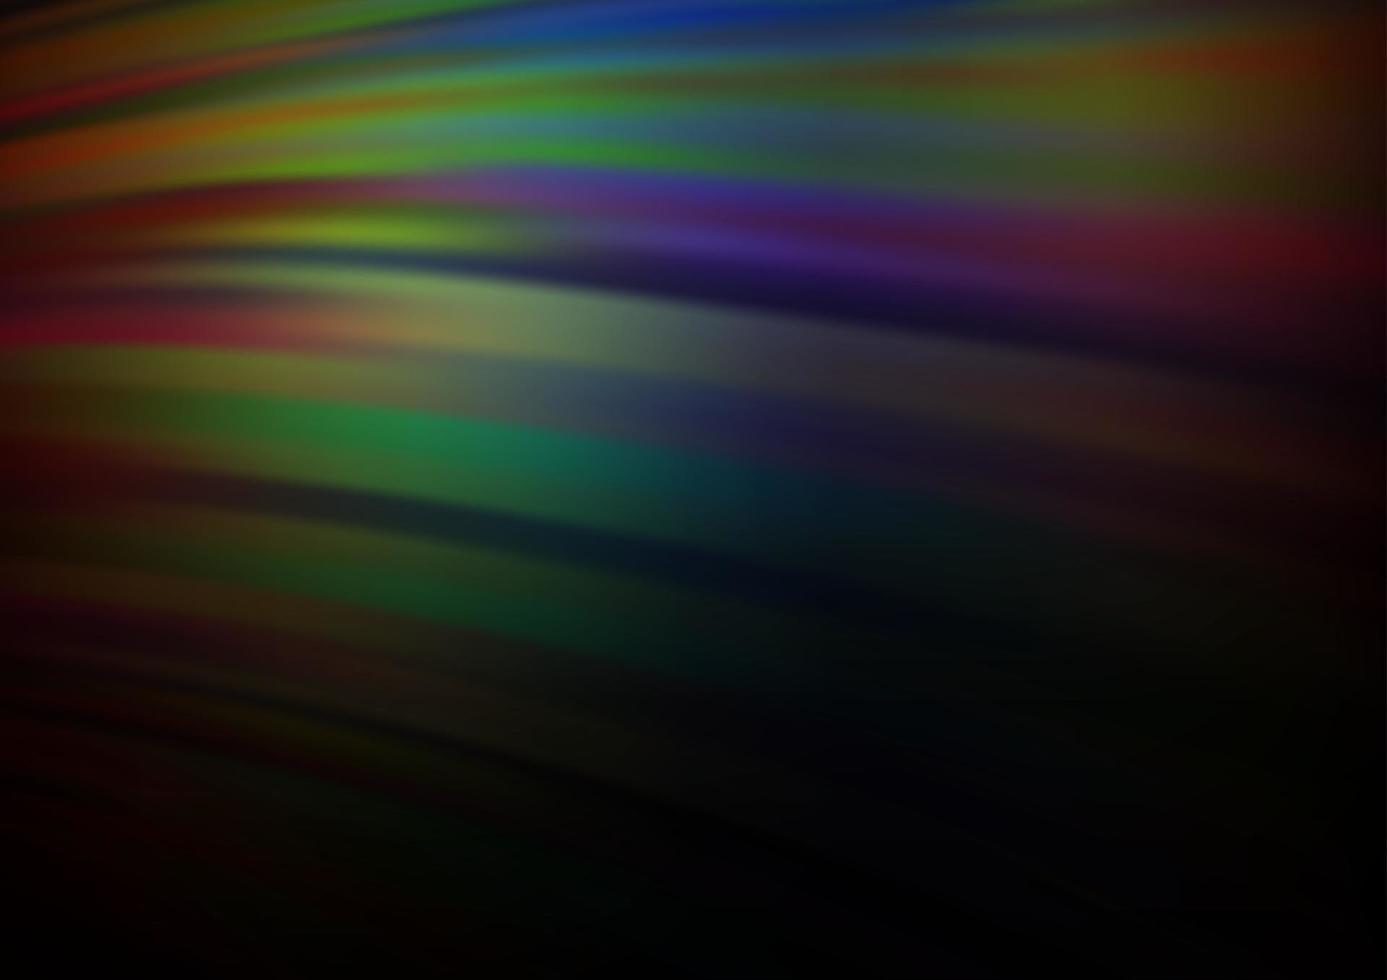 Plantilla de vector de arco iris multicolor oscuro con formas de burbujas.